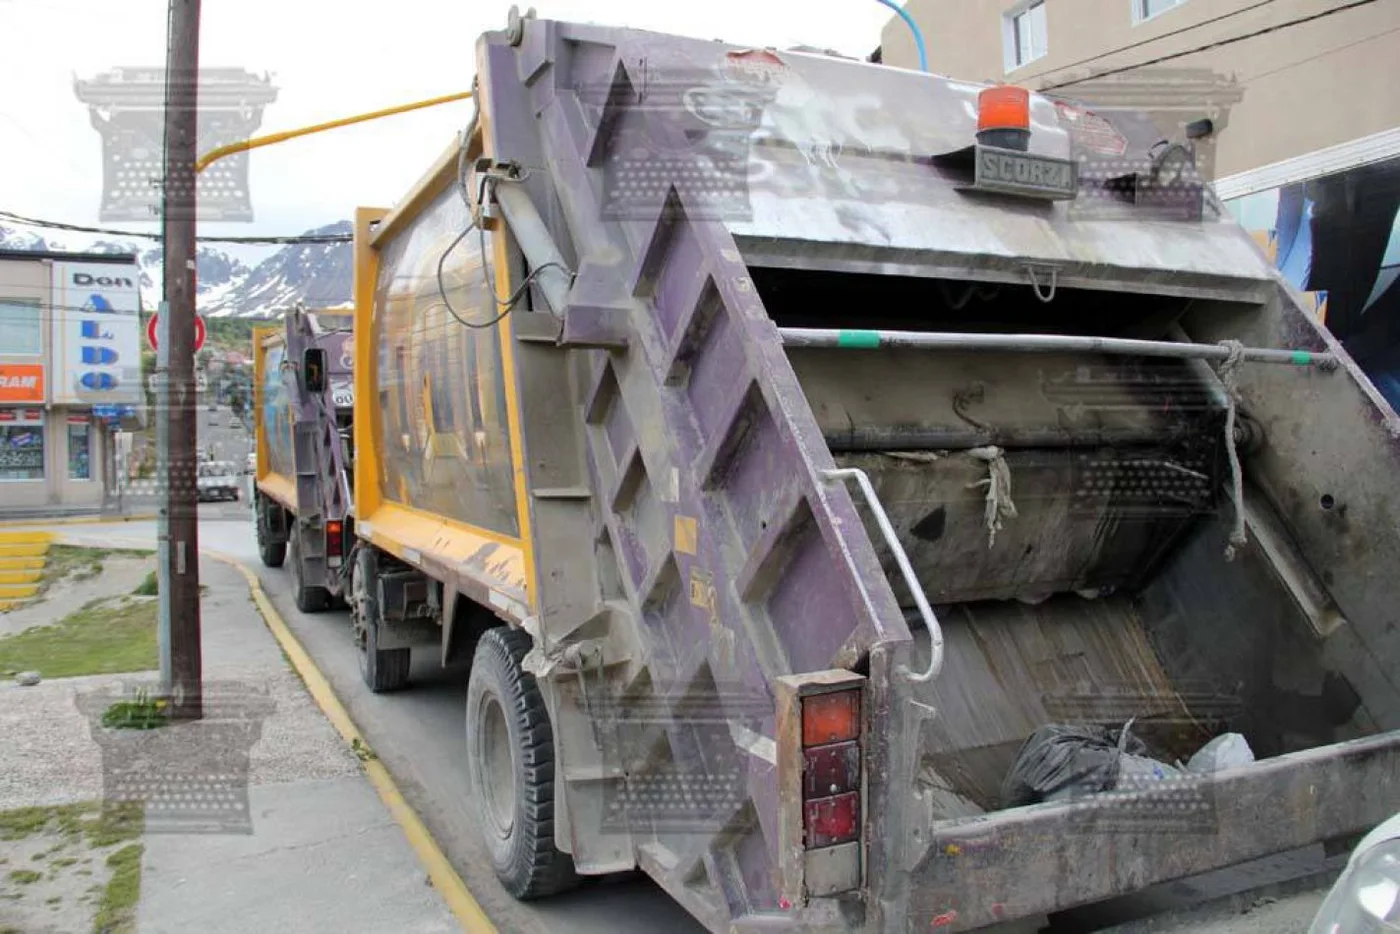 Rige en Ushuaia el nuevo horario para la recolección nocturna de residuos